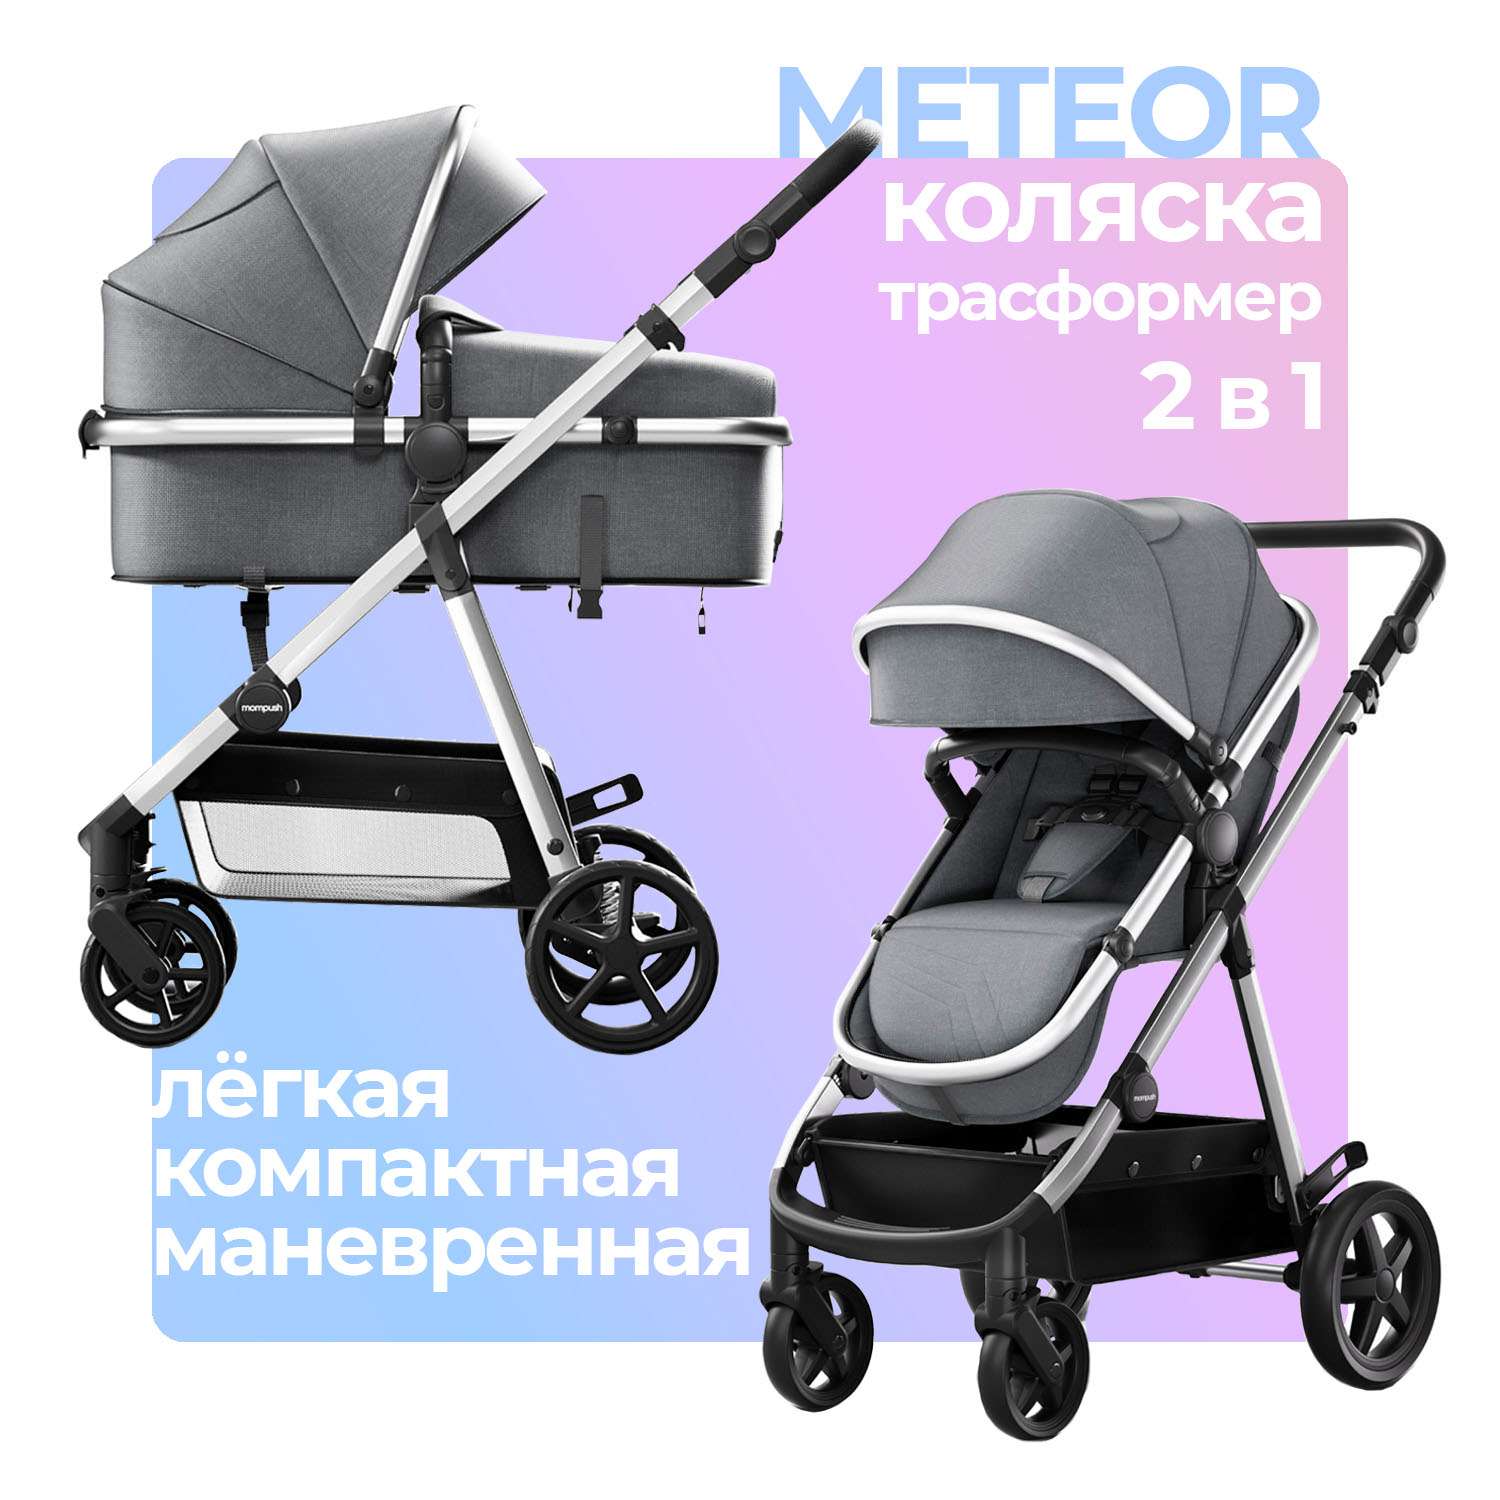 Коляска для новорожденных 2в1 Mompush Meteor всесезонная трансформер дождевик в комплекте - фото 1